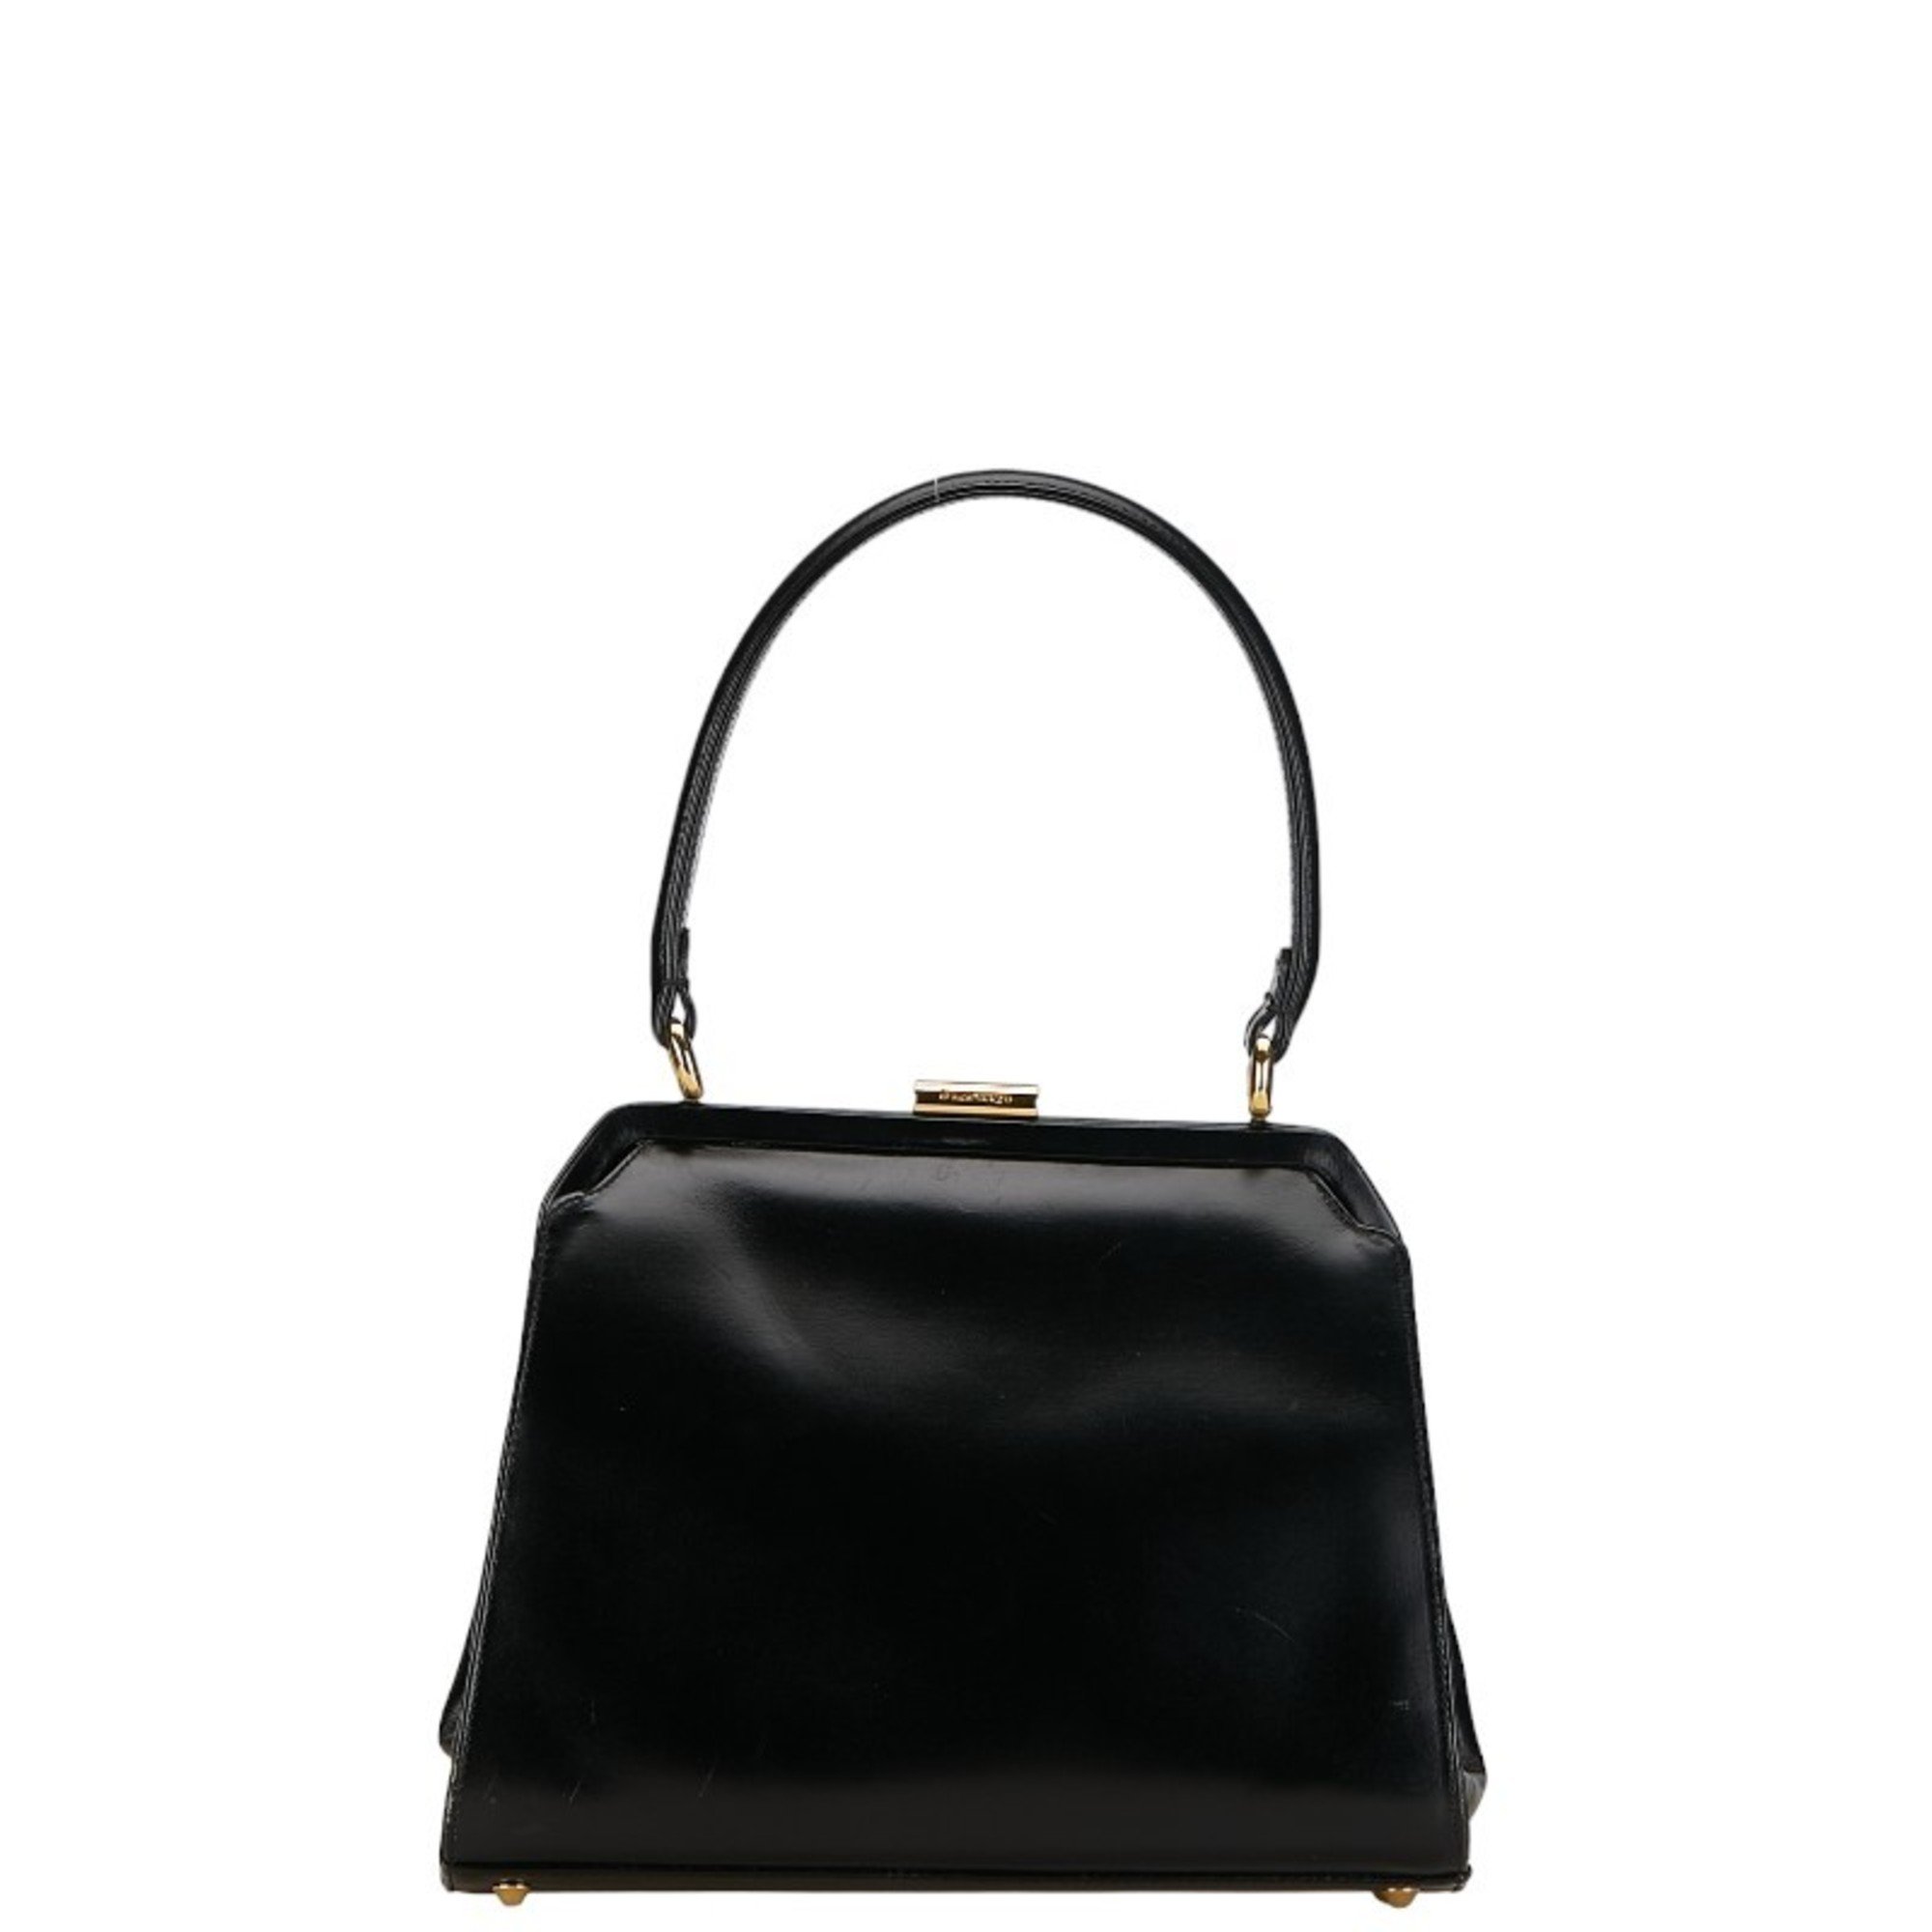 Burberry Nova Check Shadow Horse Handbag Shoulder Bag Black Gold Leather Women's BURBERRY